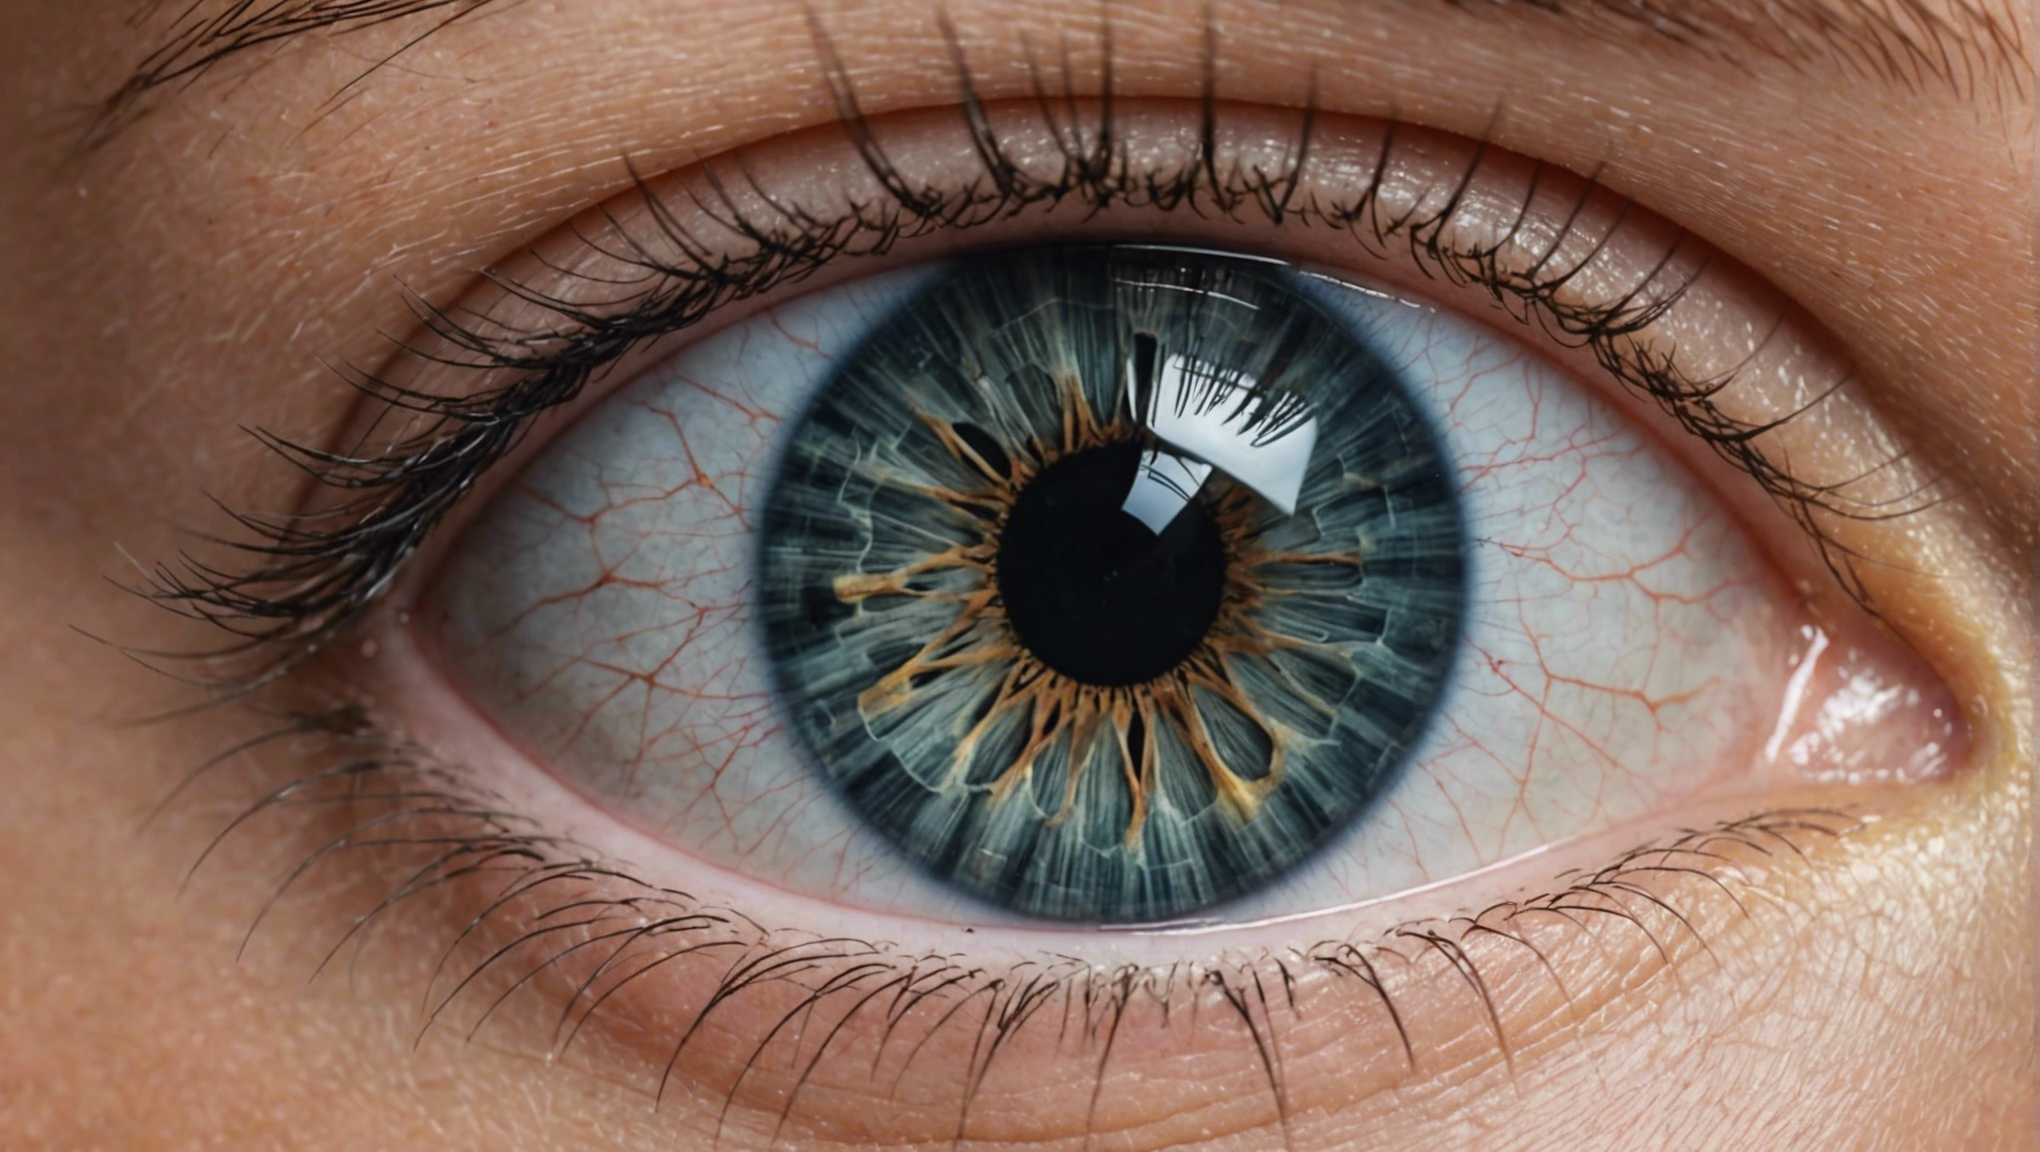 découvrez les différentes options de traitement de la cataracte et les méthodes les plus efficaces pour retrouver une vision optimale.